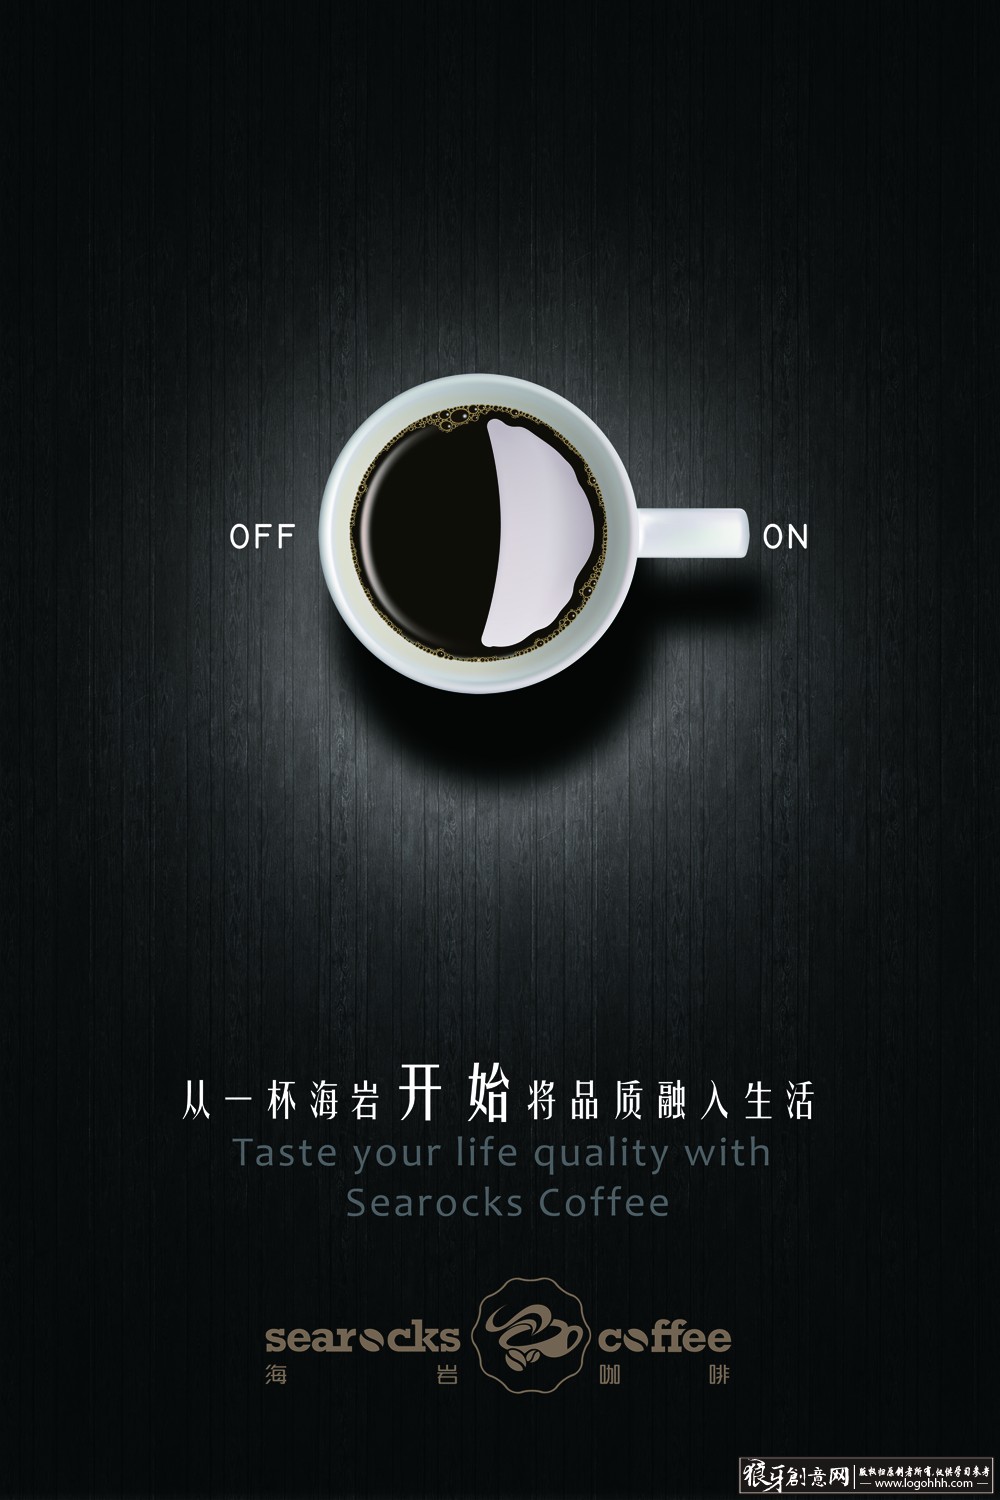 创意咖啡海报设计psd 咖啡广告设计 黑色海报背景黑色背景底图 高端